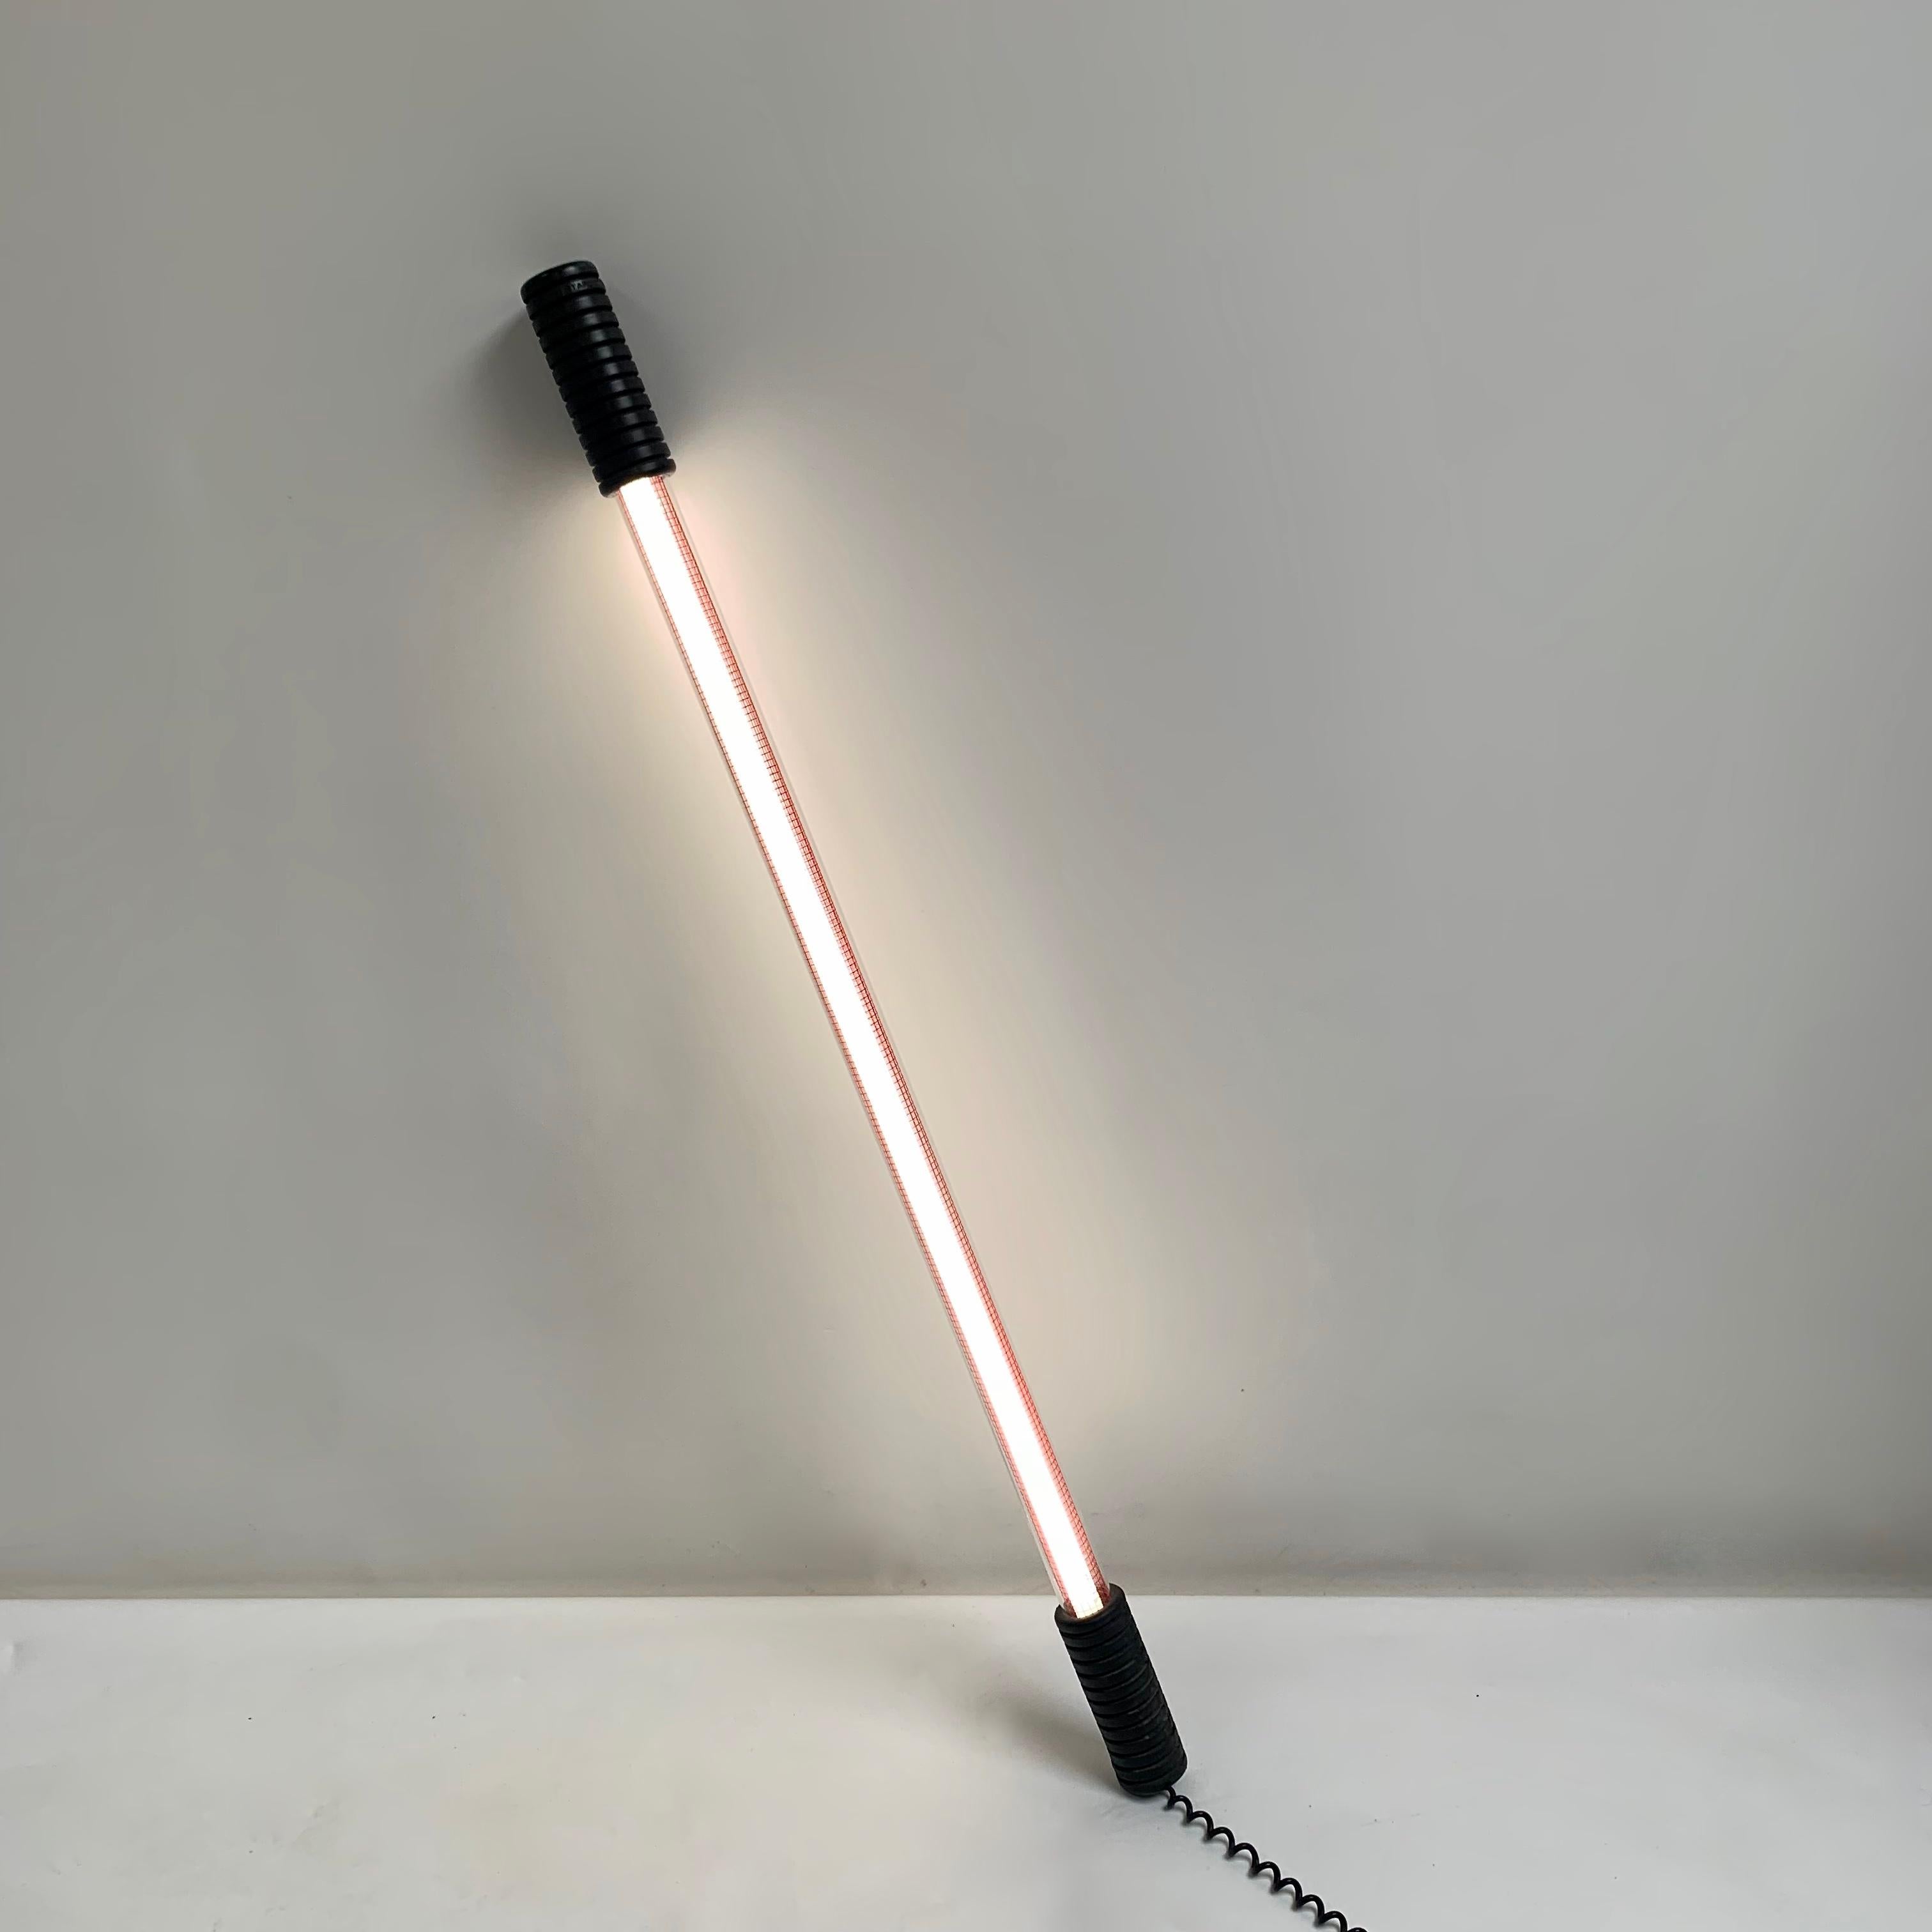 Seltene Stehleuchte Modell Easylight von Philippe Starck für Electrorama, CIRCA 1980, Frankreich.
Geprägtes Starck-Produkt. Erstausgabe.
Die Lampe wird durch Kippen mit einem Quecksilberschalter ein- und ausgeschaltet.
Leuchtstoffröhre,